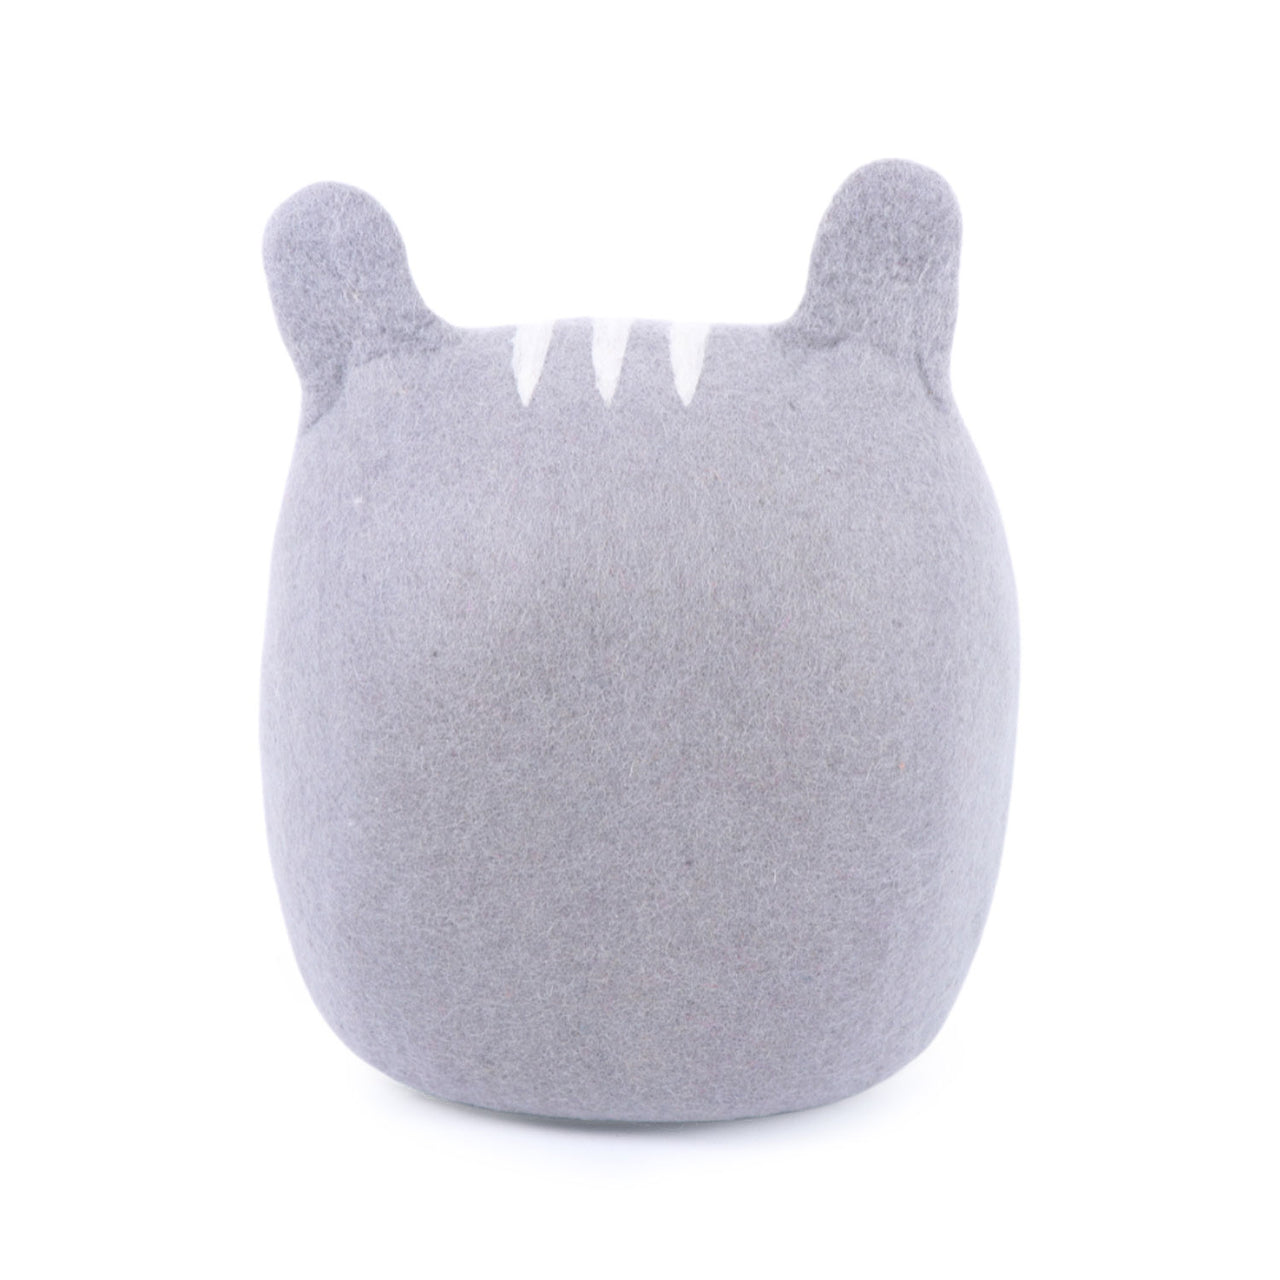 Cat Faced Grey Coloured Felt Cat House With Ears